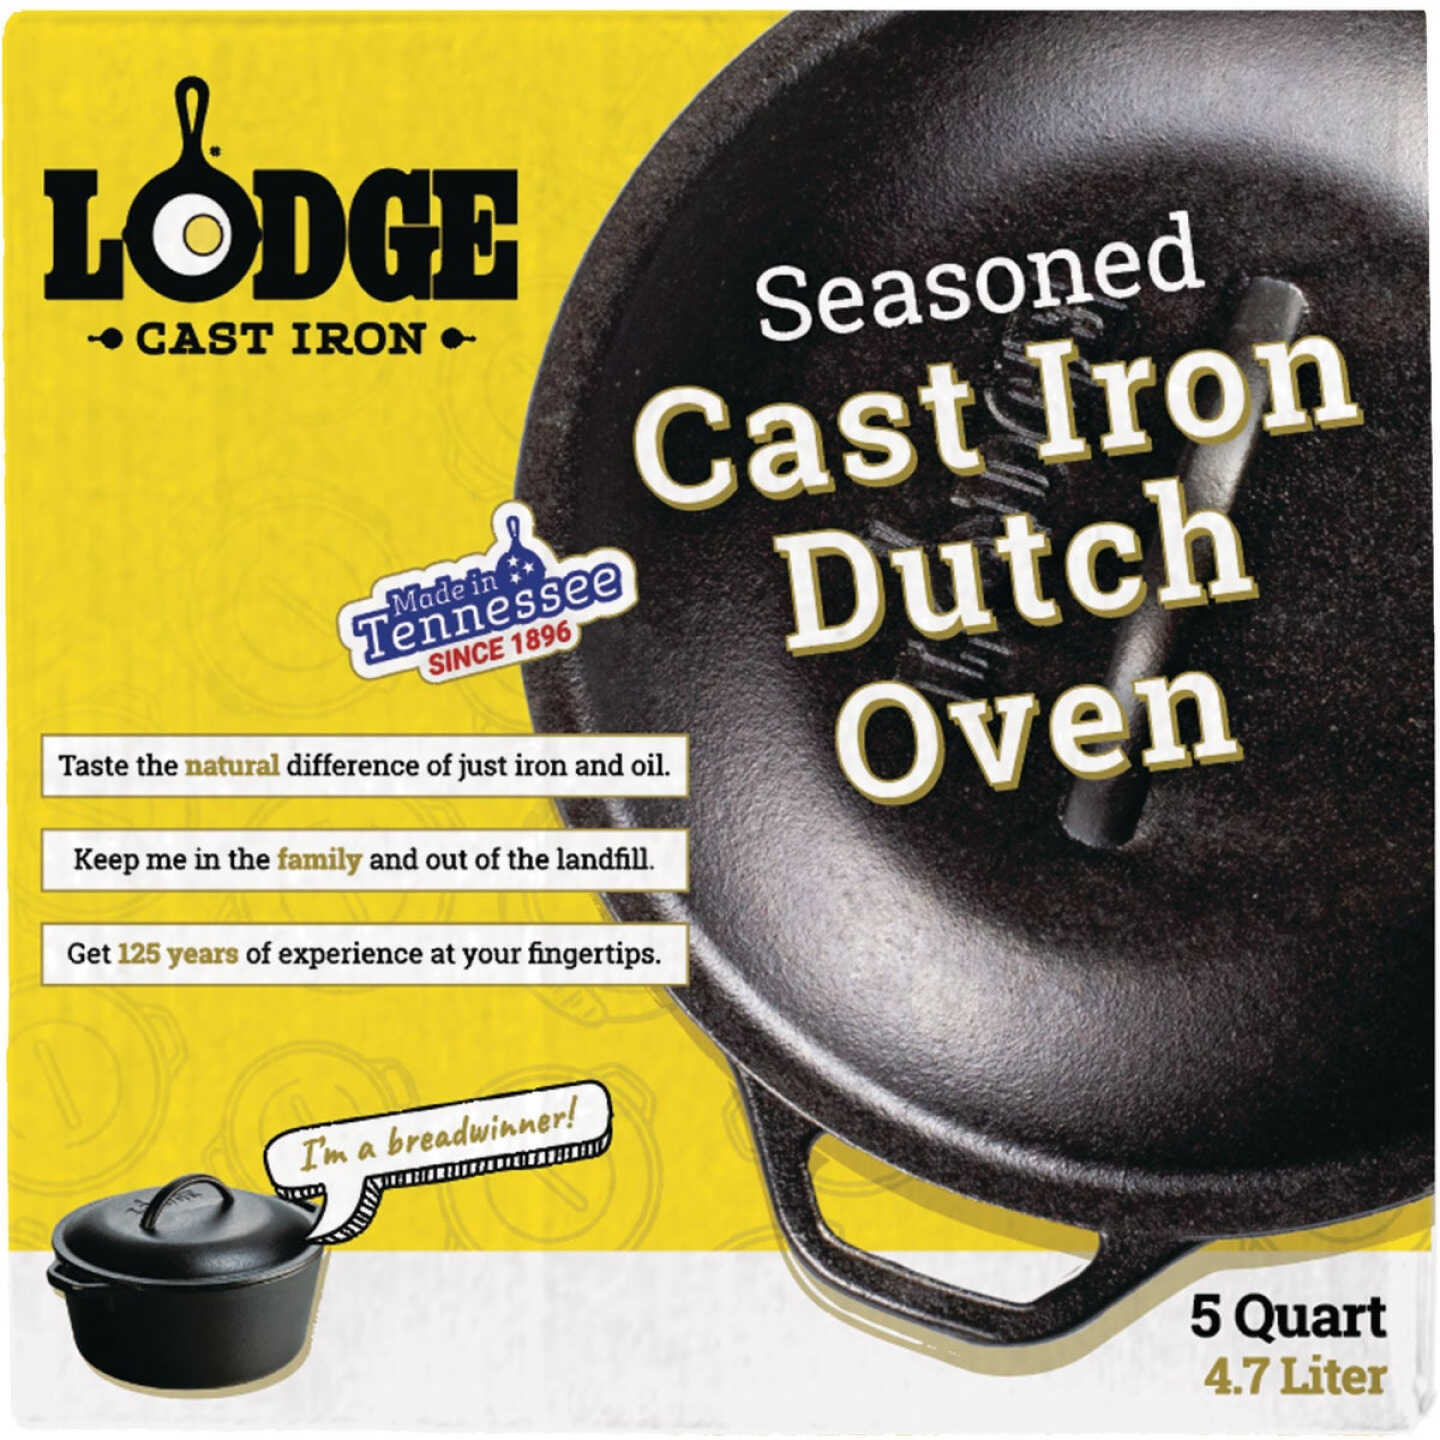 Lodge 5qt. Cast Iron Dutch Oven + Reviews